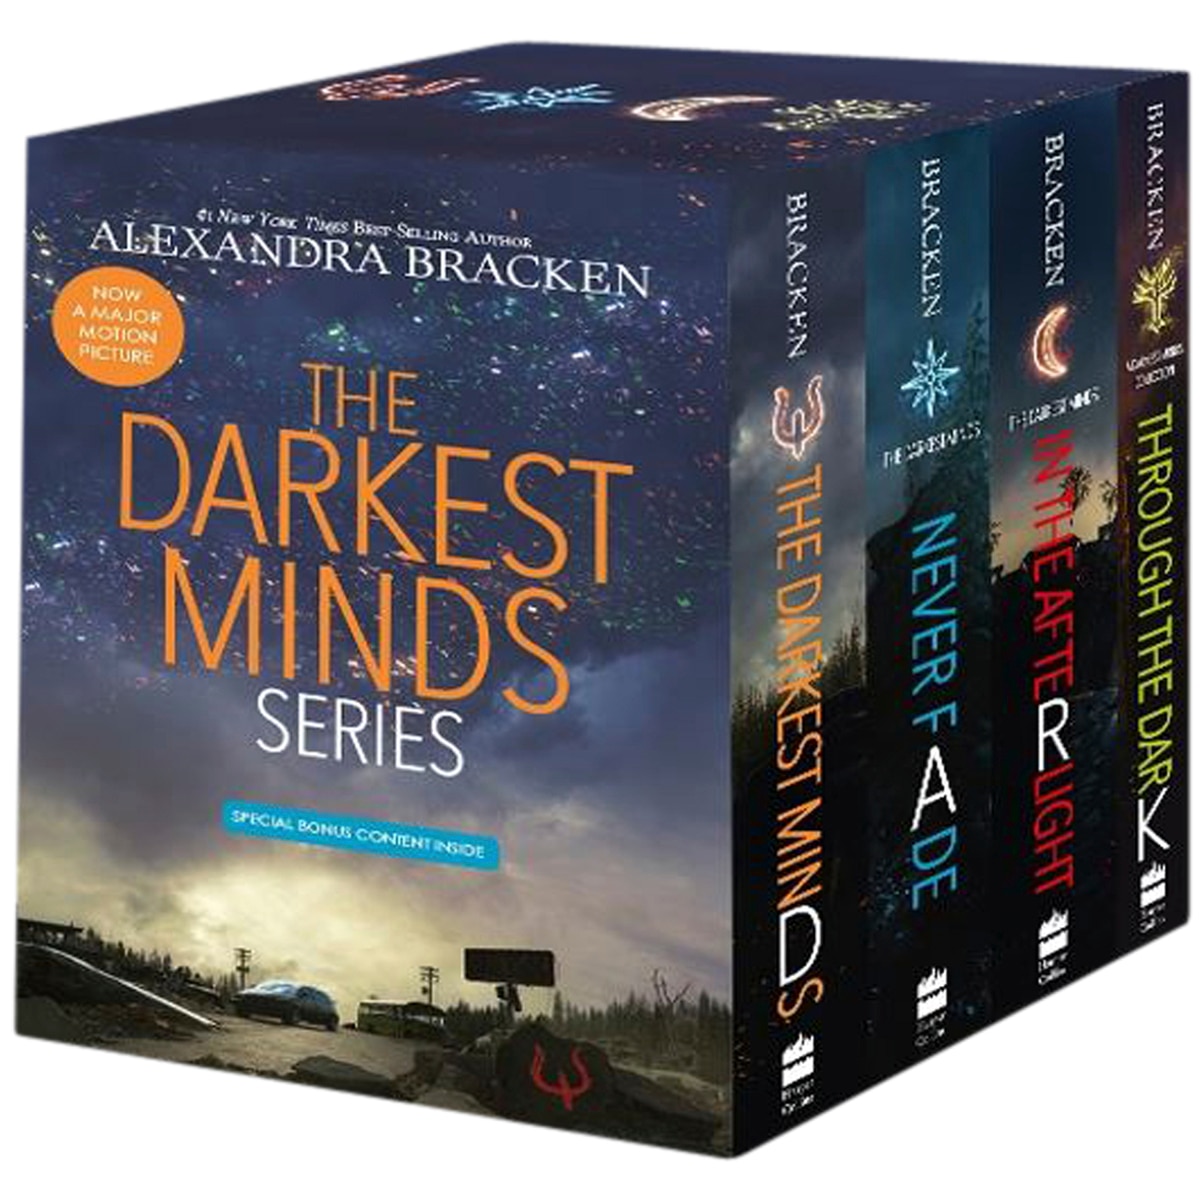 The Darkest Minds Series Box Set